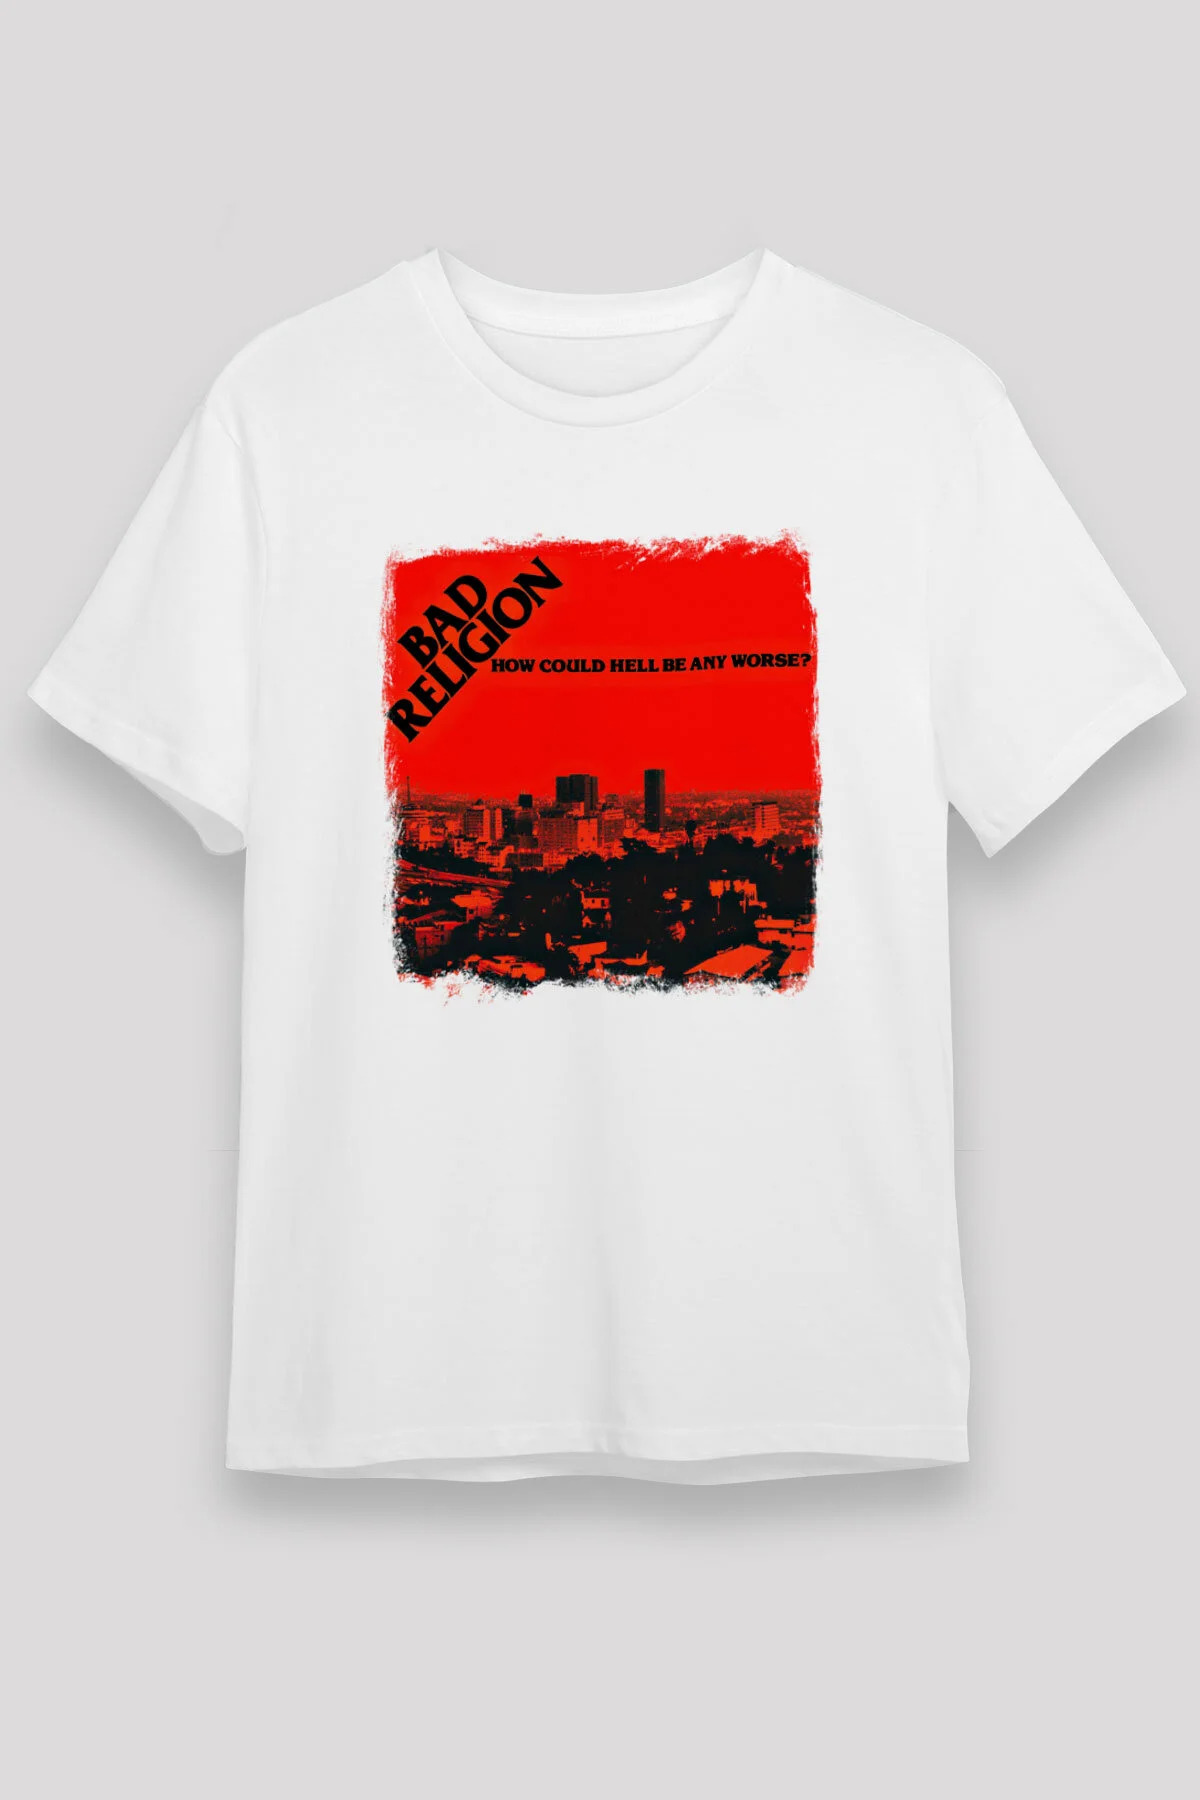 Bad Religion ,Music Band ,Unisex Tshirt 20